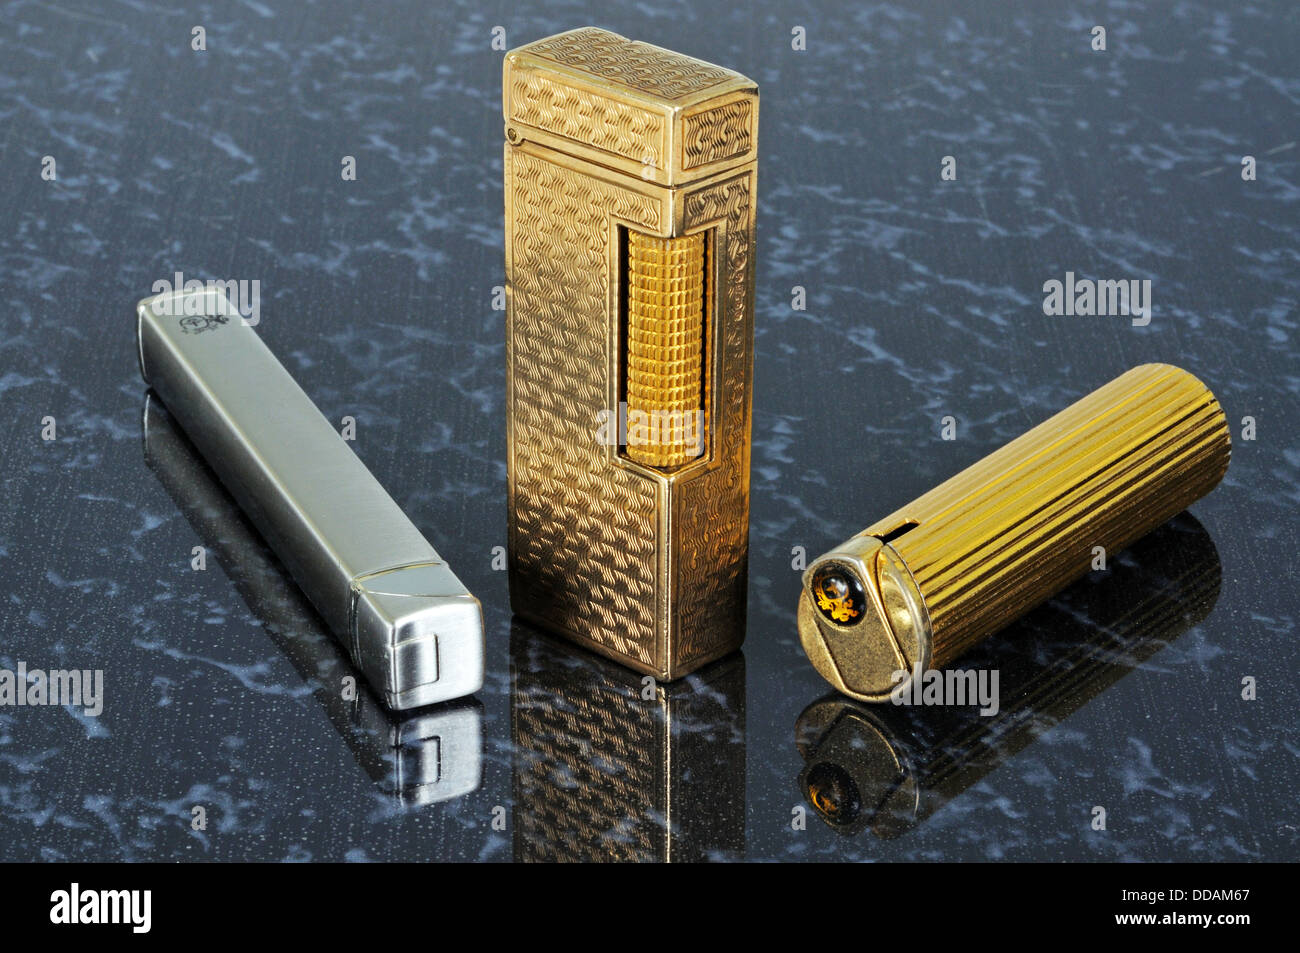 Chrome Colibri, Dunhill gold, and Colibri cigarette lighters. Stock Photo